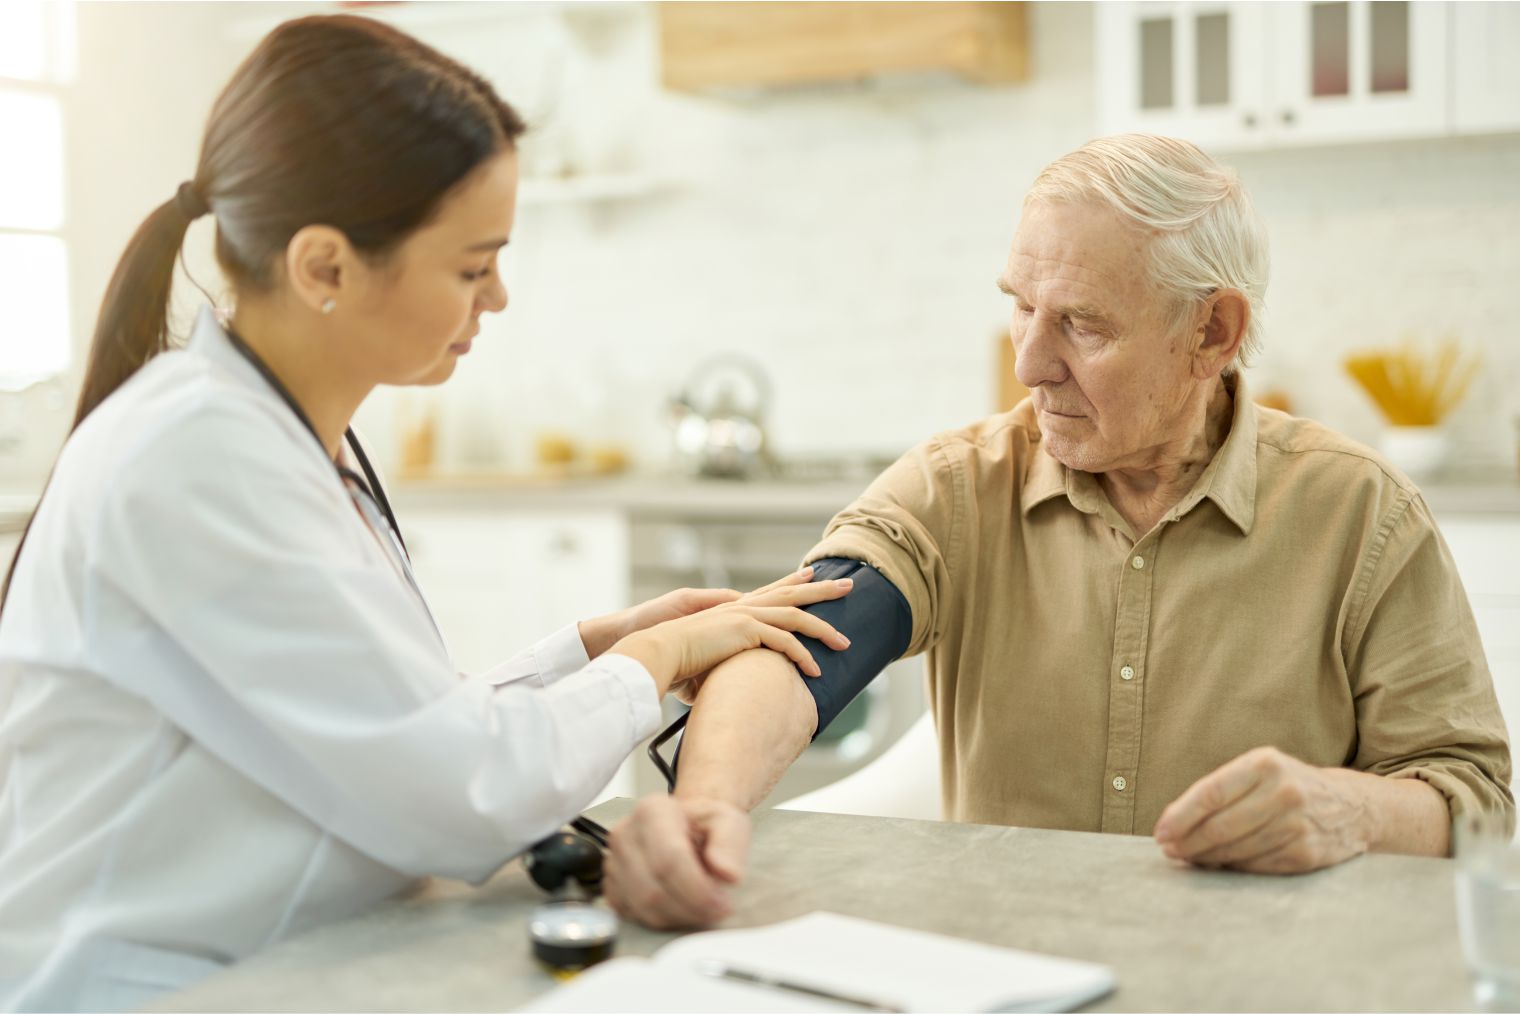 Portal Dicas de Saúde - Estudo identifica substância que pode conter avanço de Parkinson